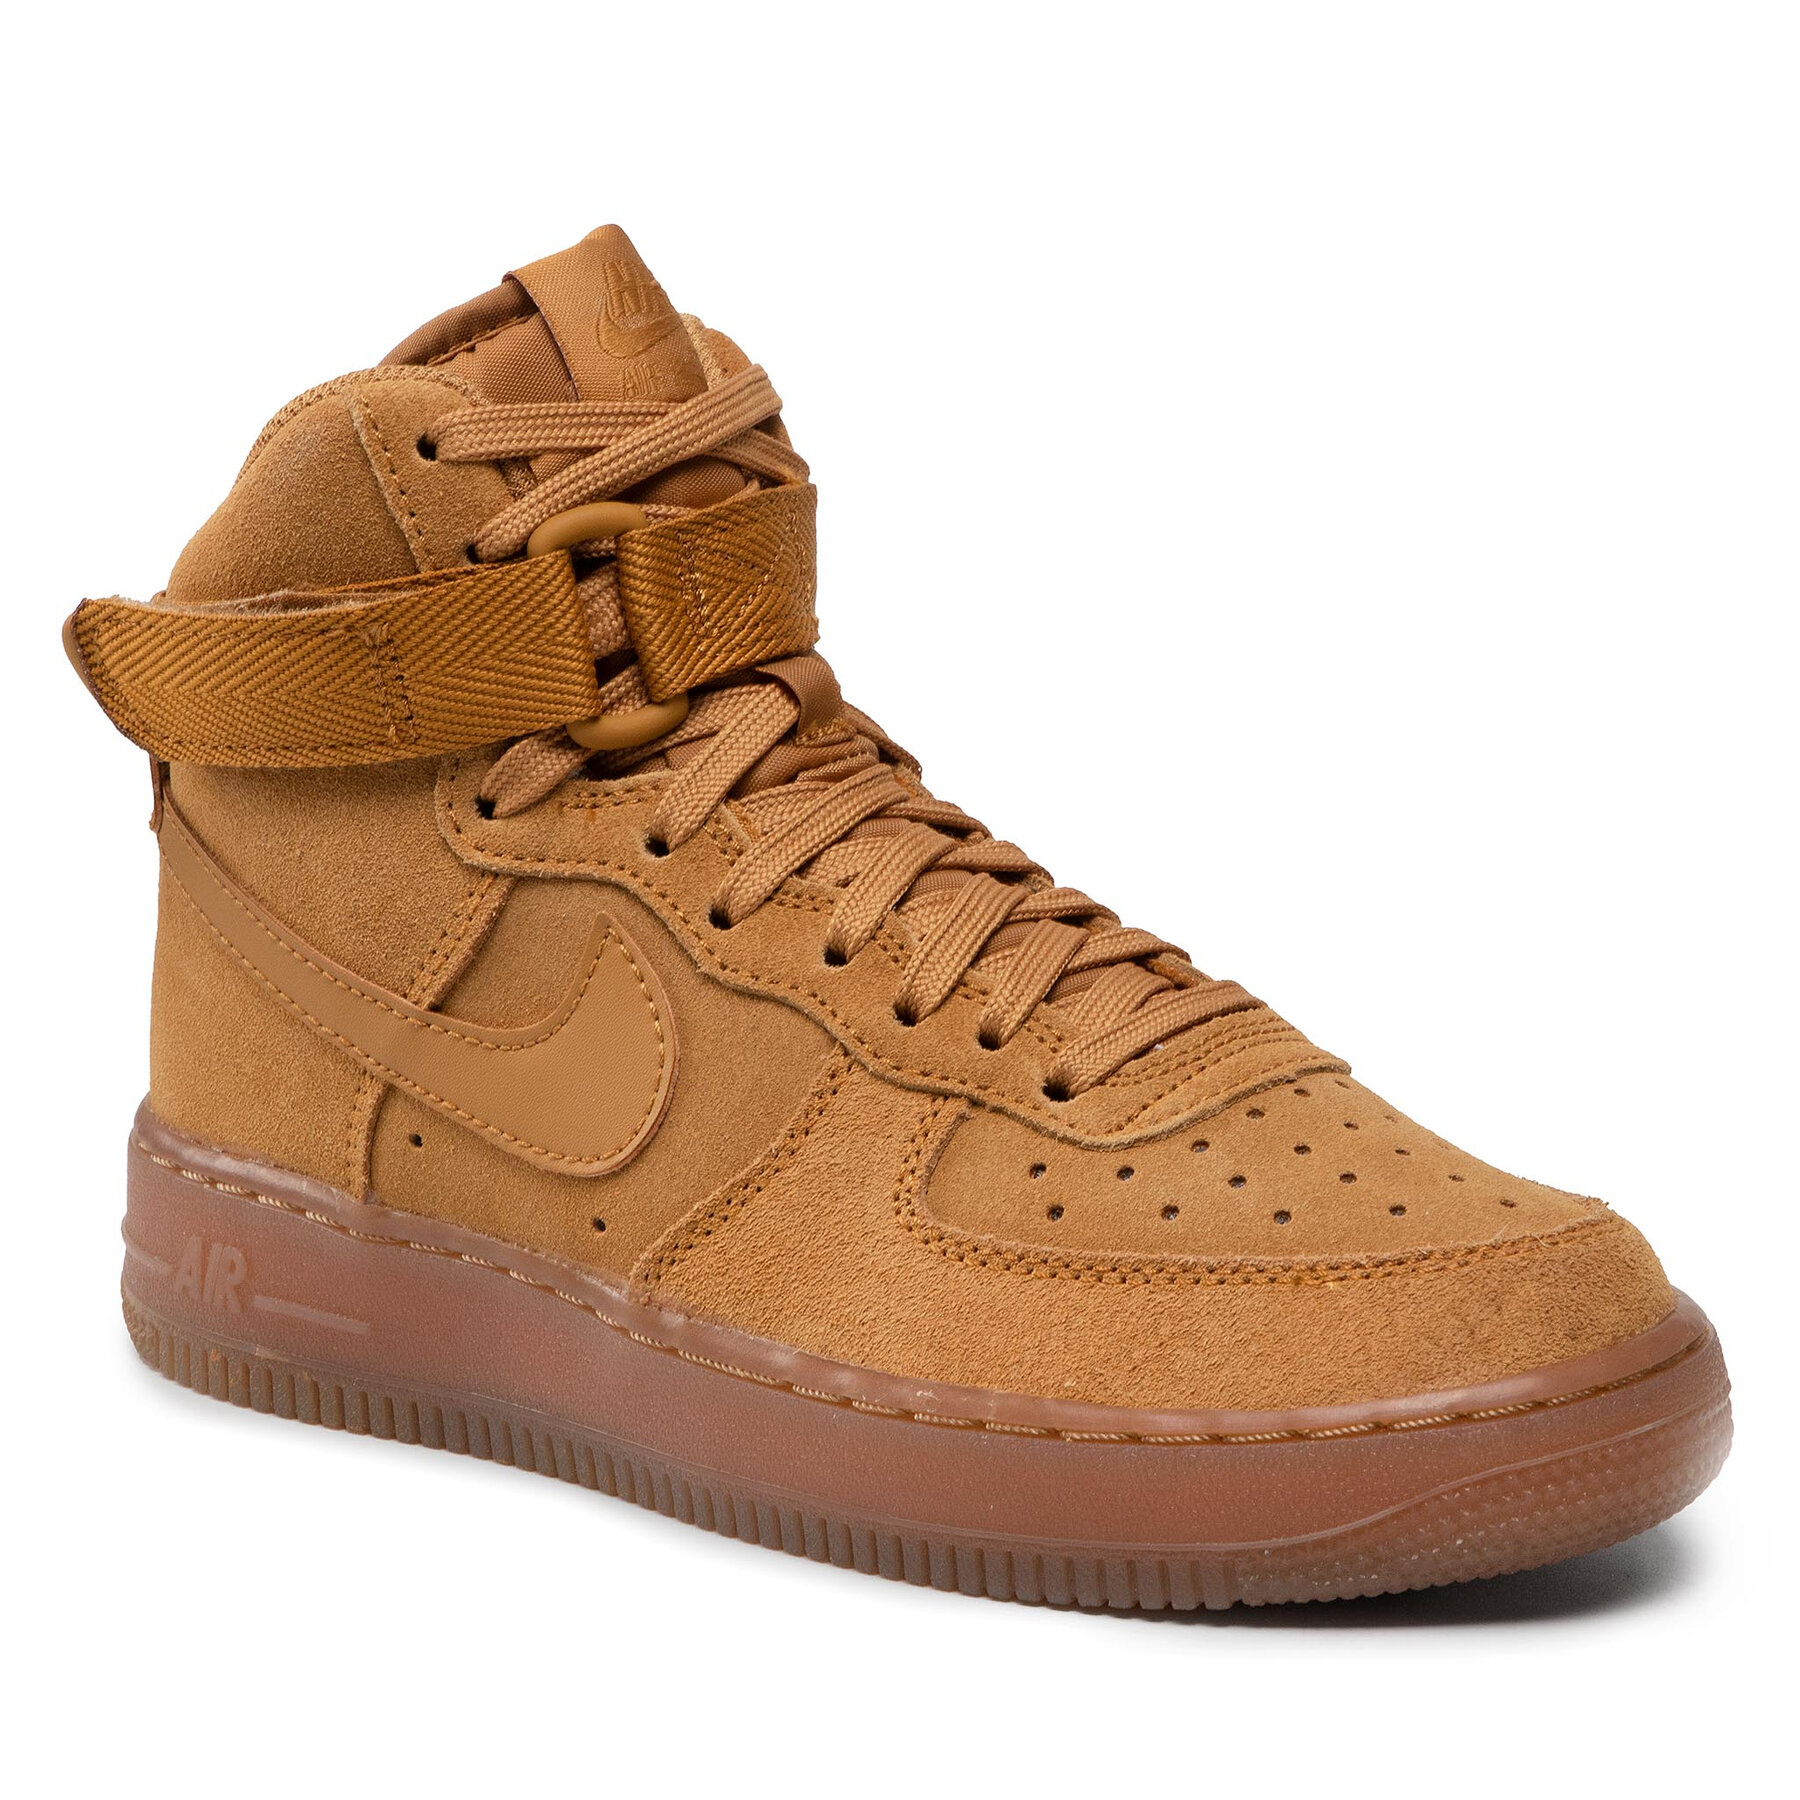 Pantofi Nike Air Force 1 High Lv 8 3 (GS) CK0262 700 Wheat/Wheat/Gum Light Brown